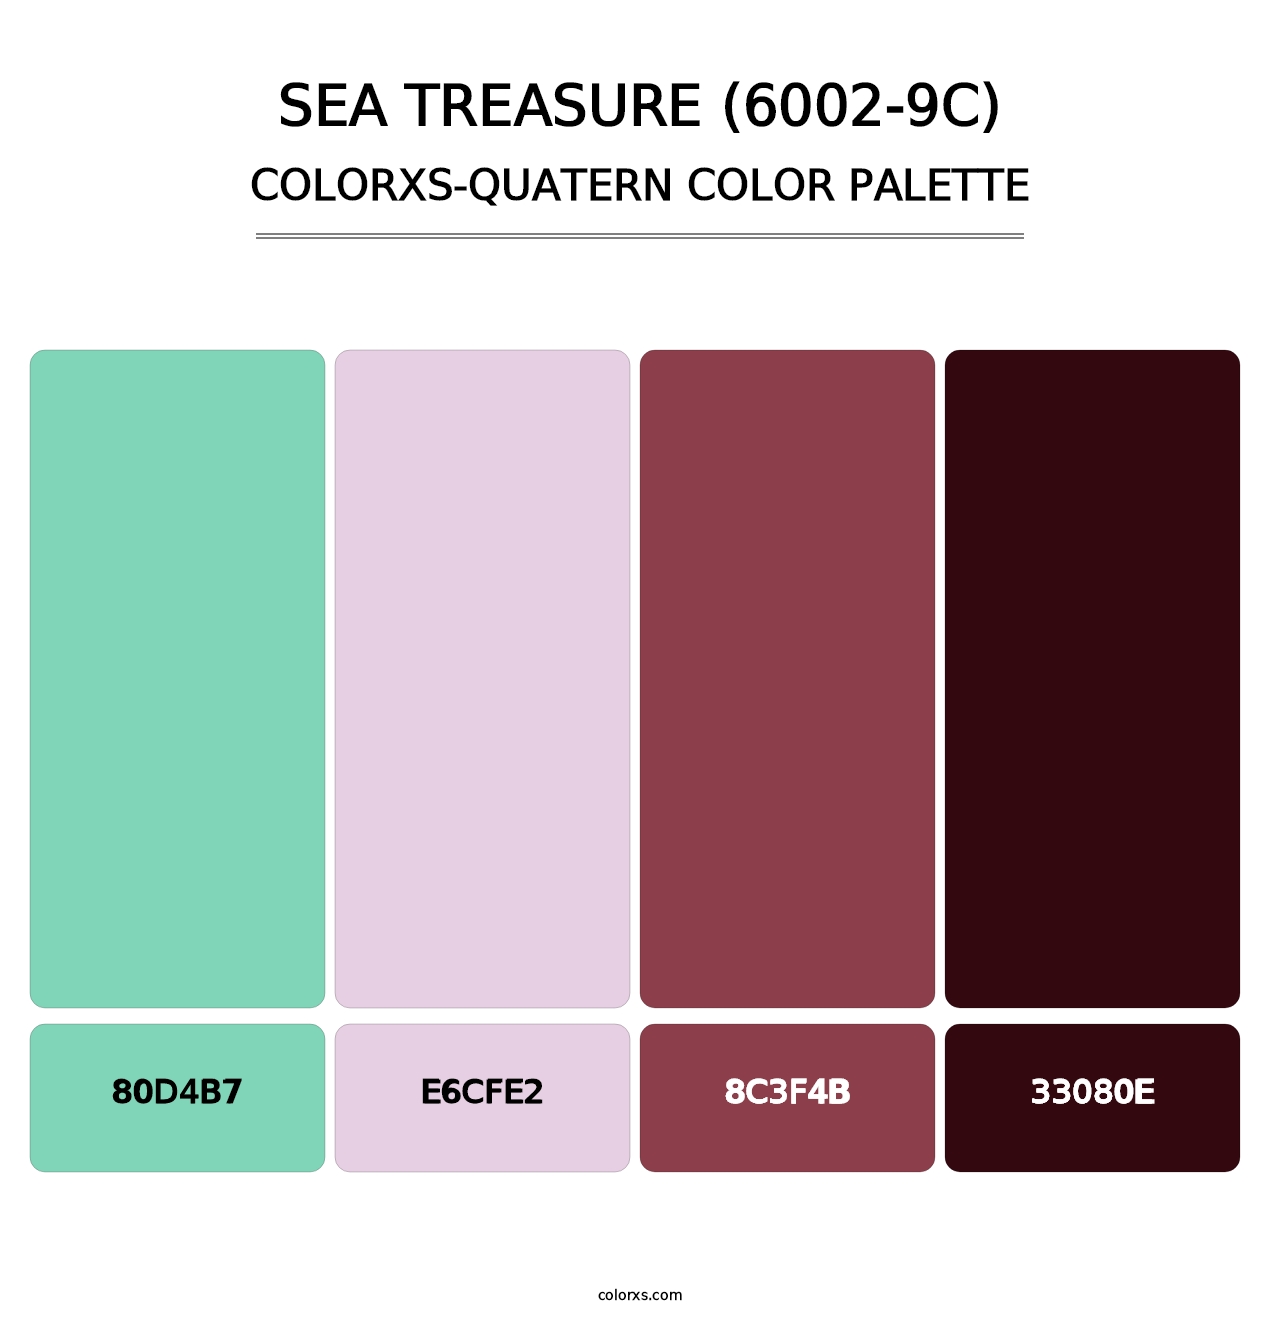 Sea Treasure (6002-9C) - Colorxs Quatern Palette